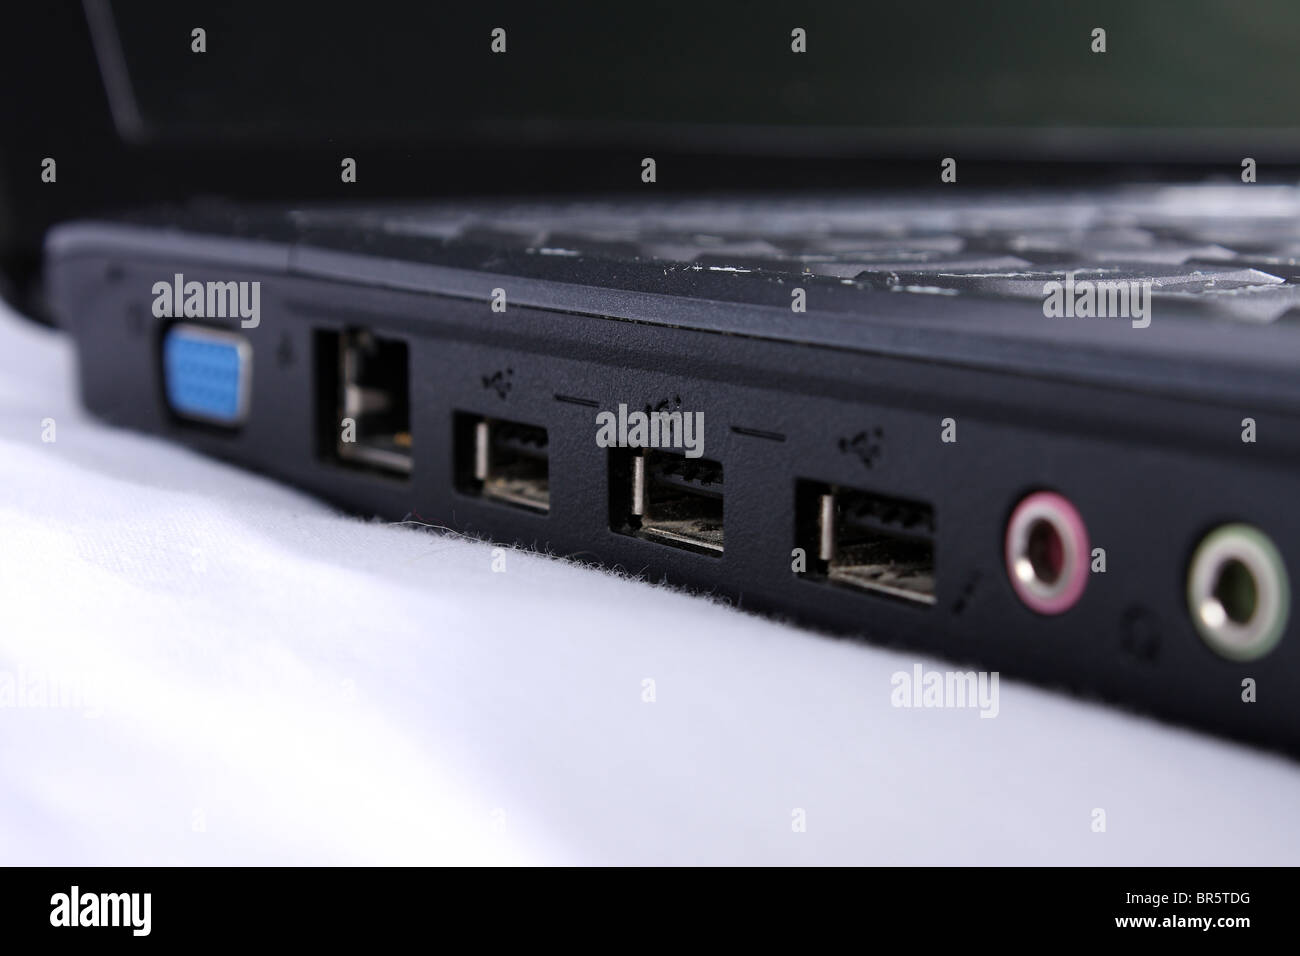 Le côté d'un ordinateur portable Acer montrant les ports USB 2.0 ; la prise du microphone et la prise casque. Banque D'Images